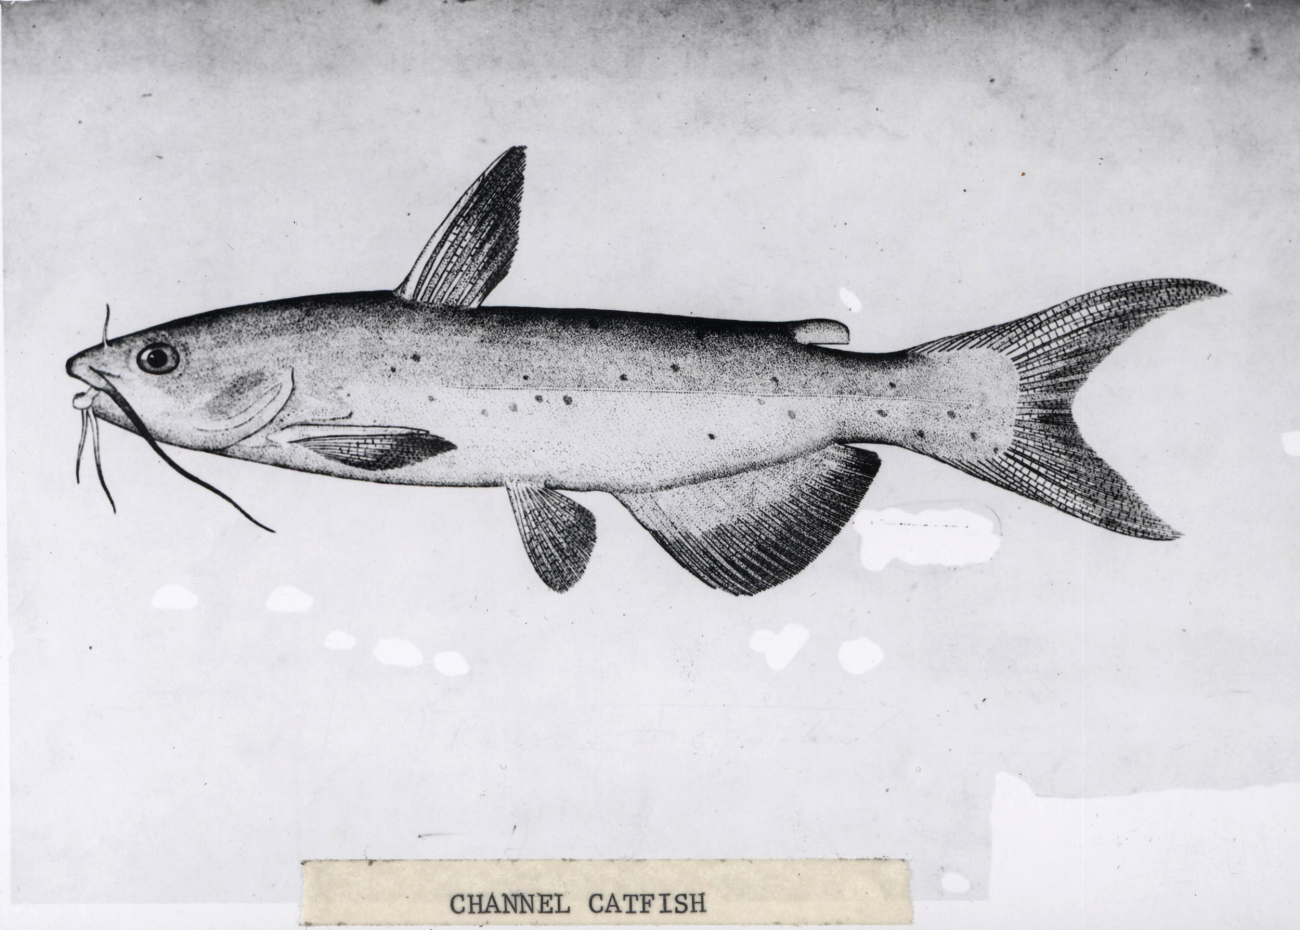 Artwork - channel catfish (Ictalurus punctatus)